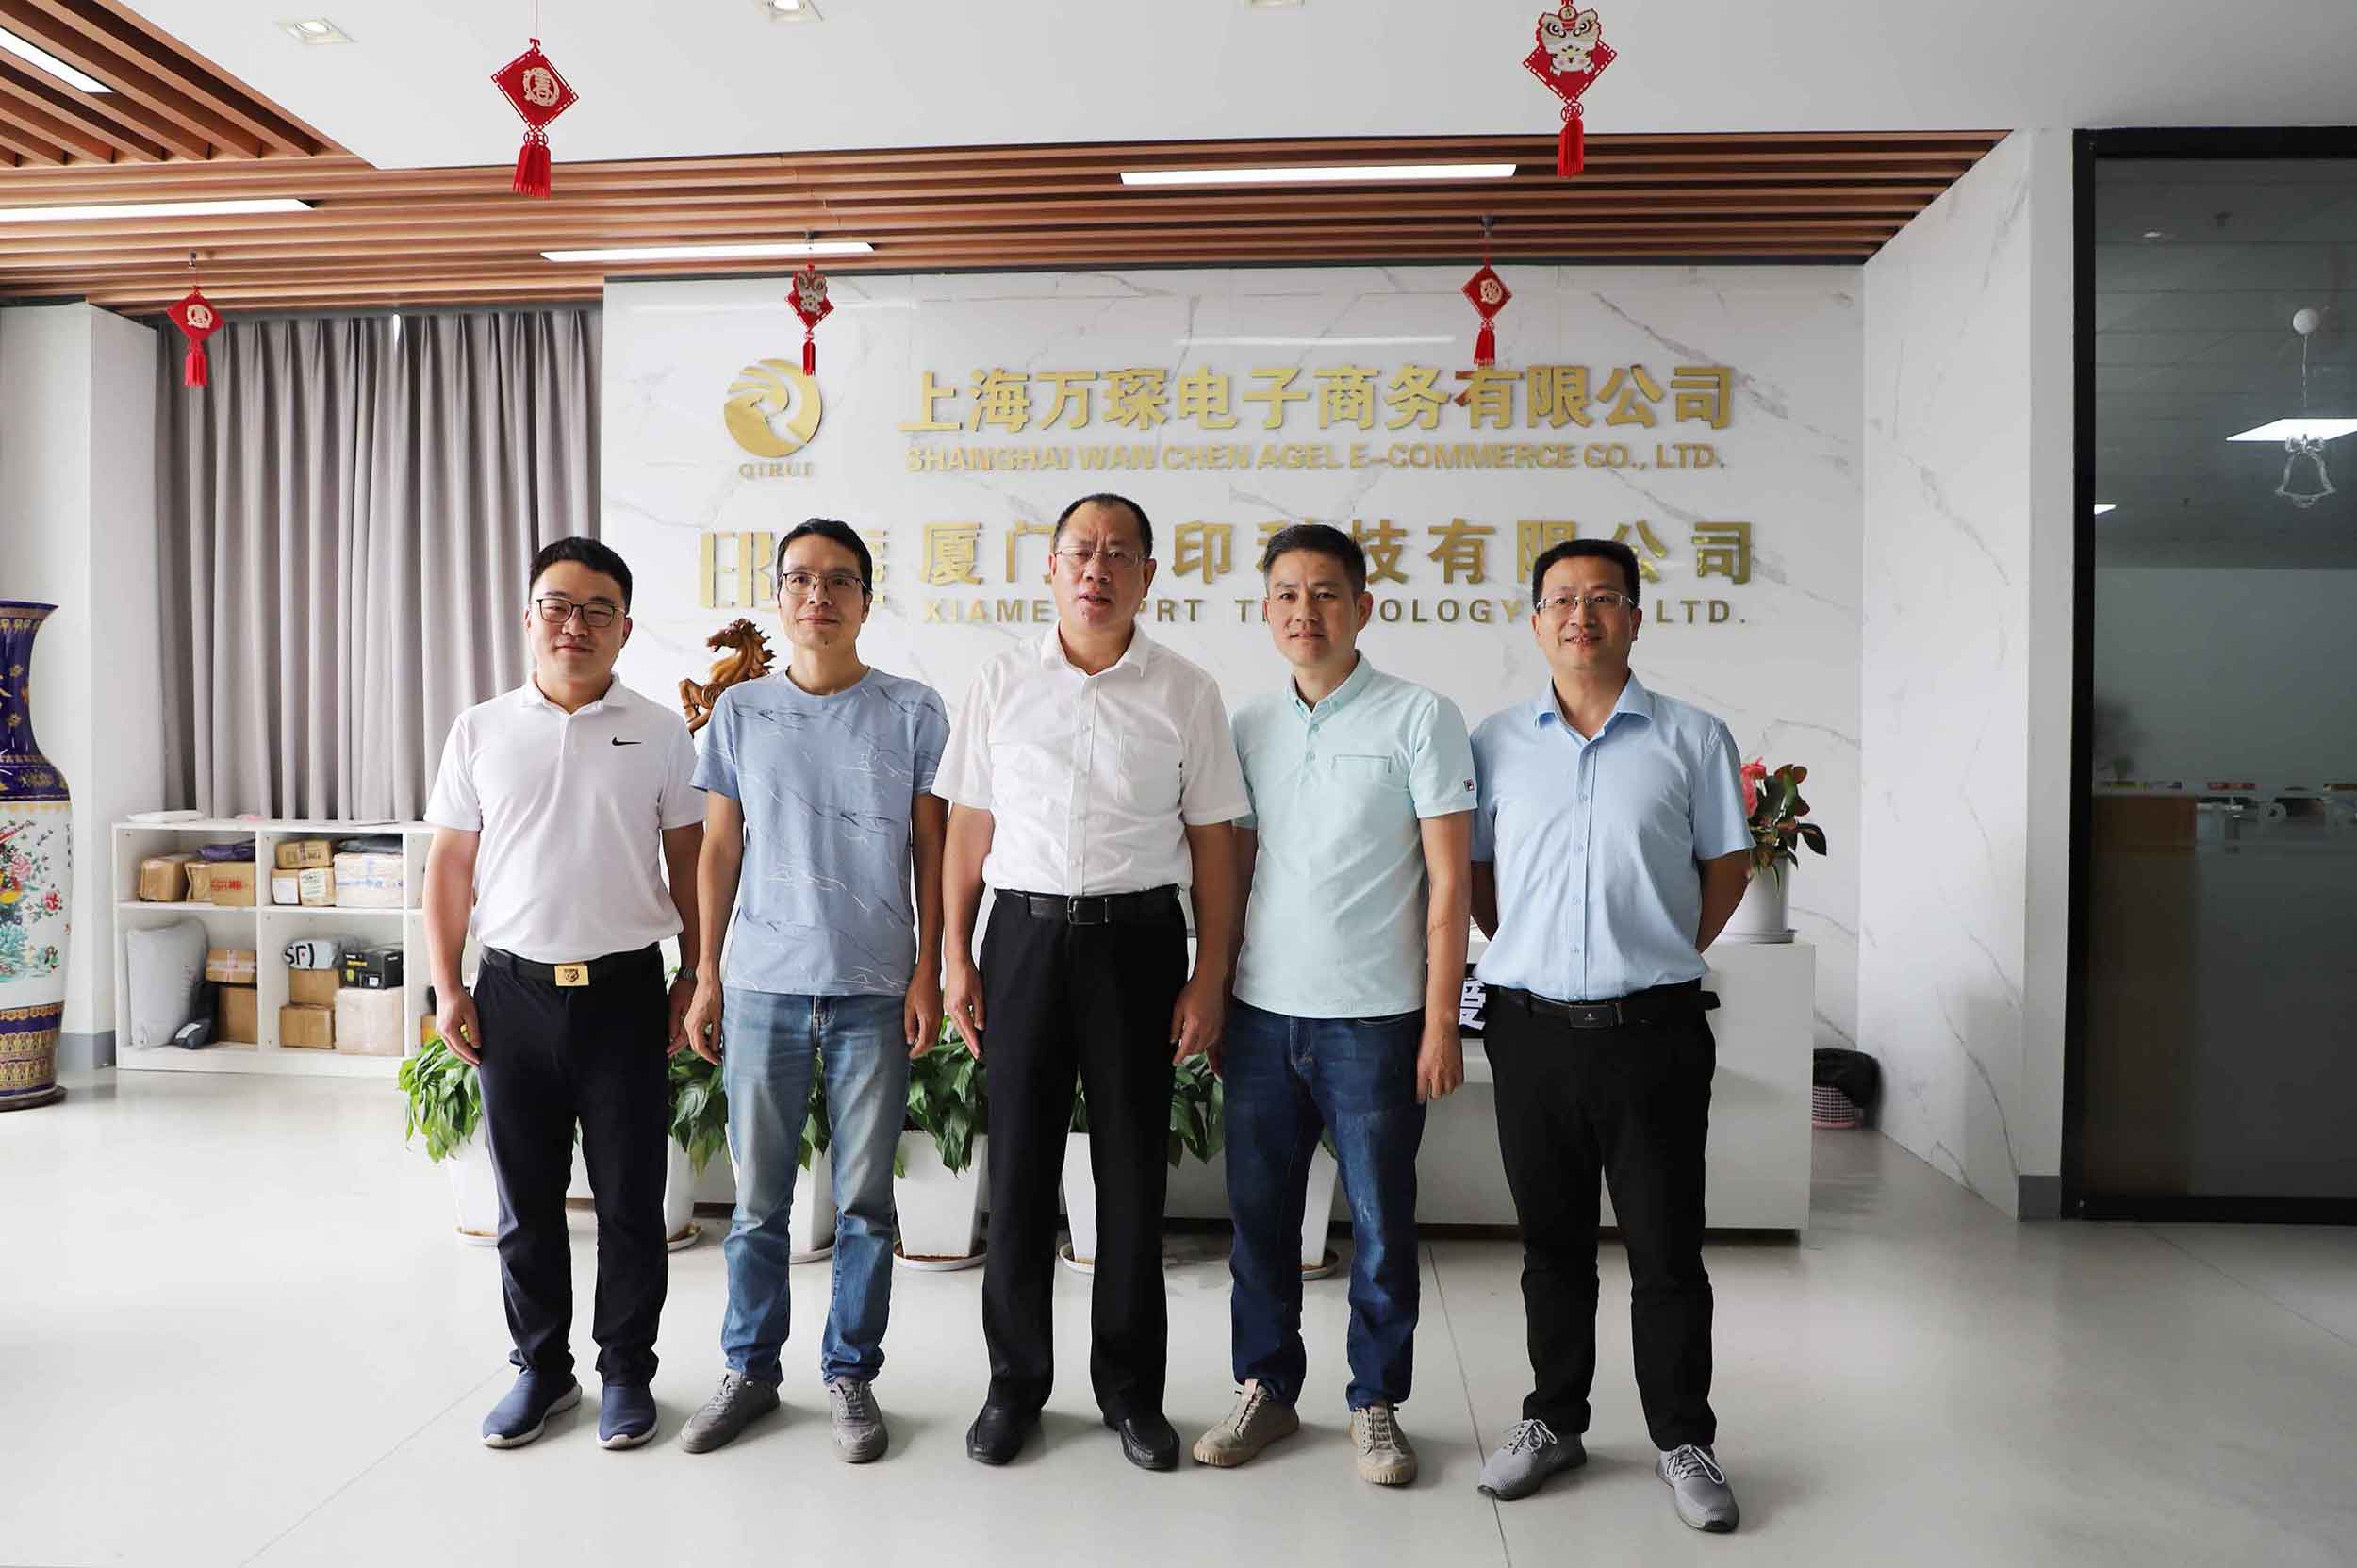 Zhang Yigong, Deputy secretary of Xiamen Municipal Party Committee, was presented IPRT Technology research